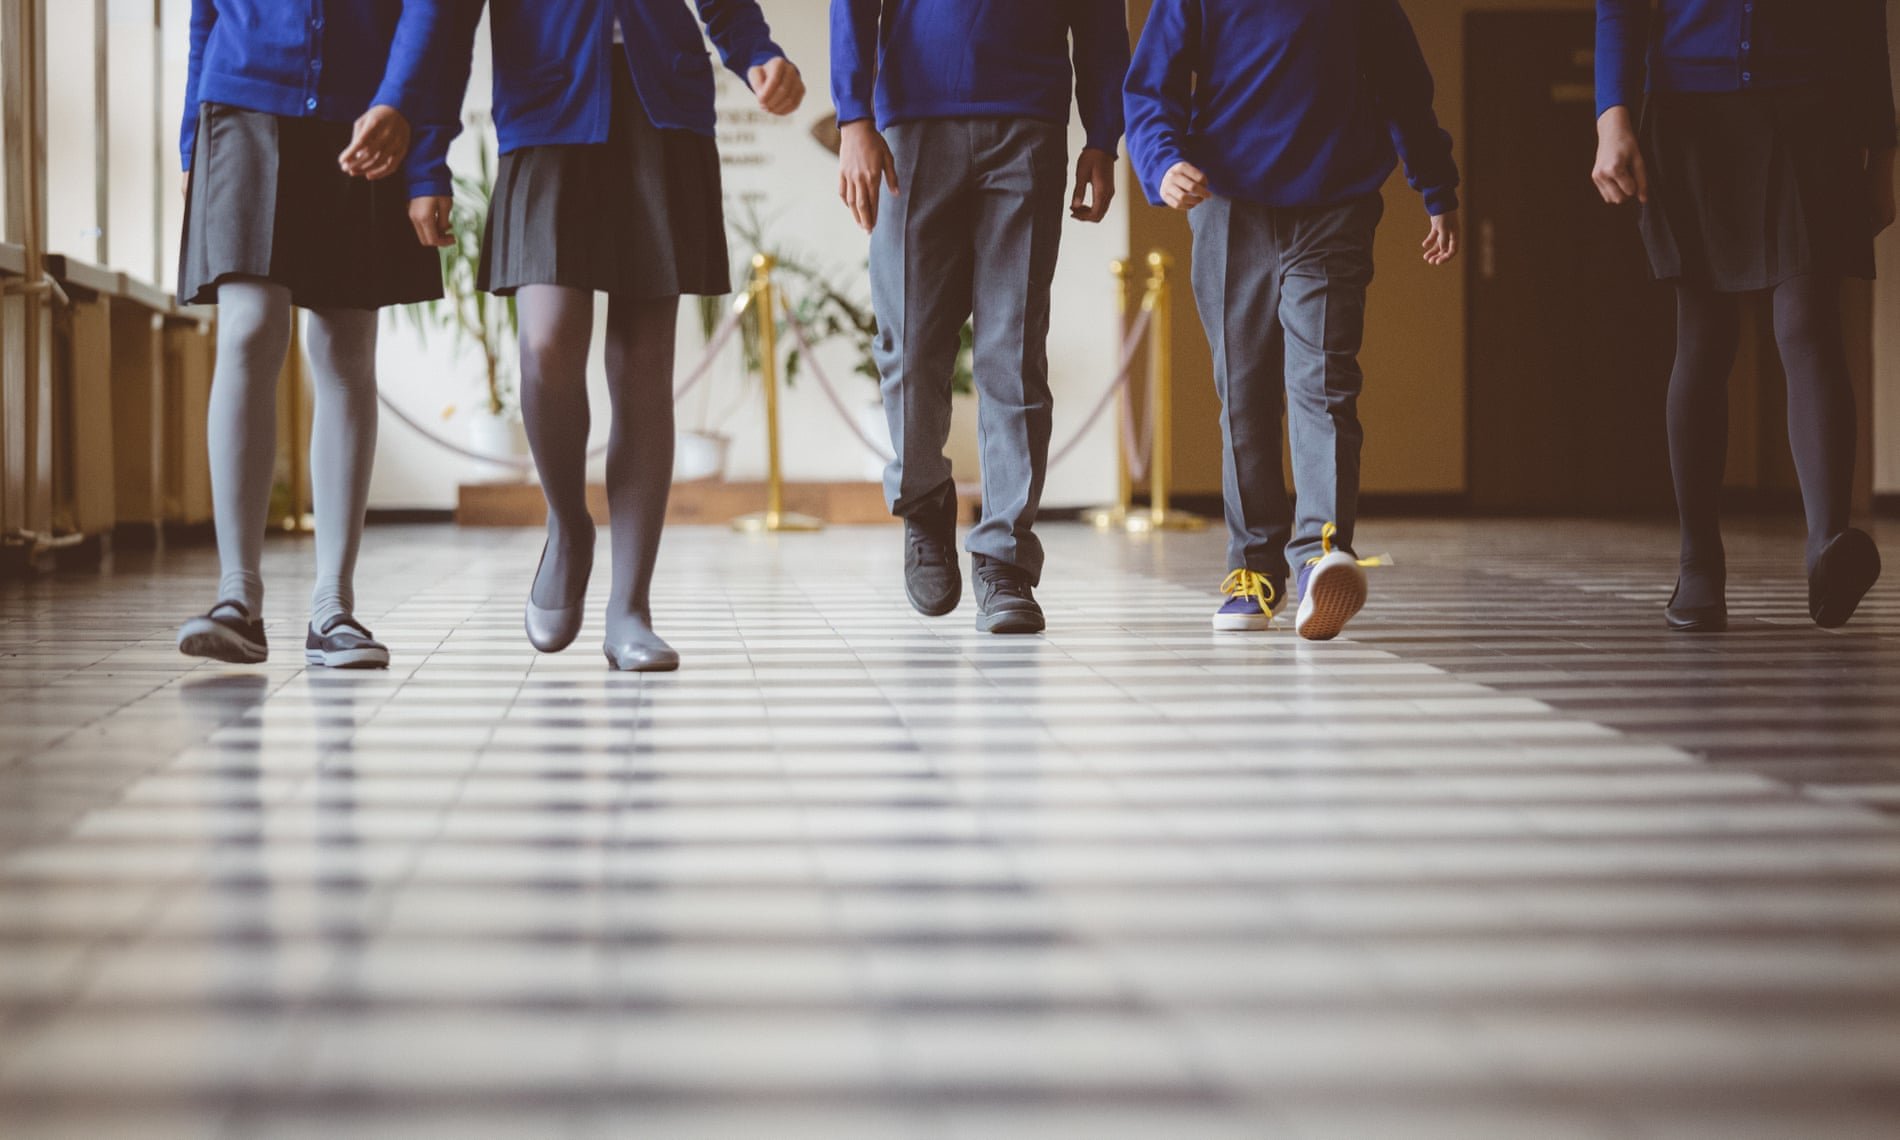 यूके किशोर लड़के: यौन उत्पीड़न के लिए उच्च जोखिम समूह - शिक्षकों को संकेतों को देखने का आग्रह